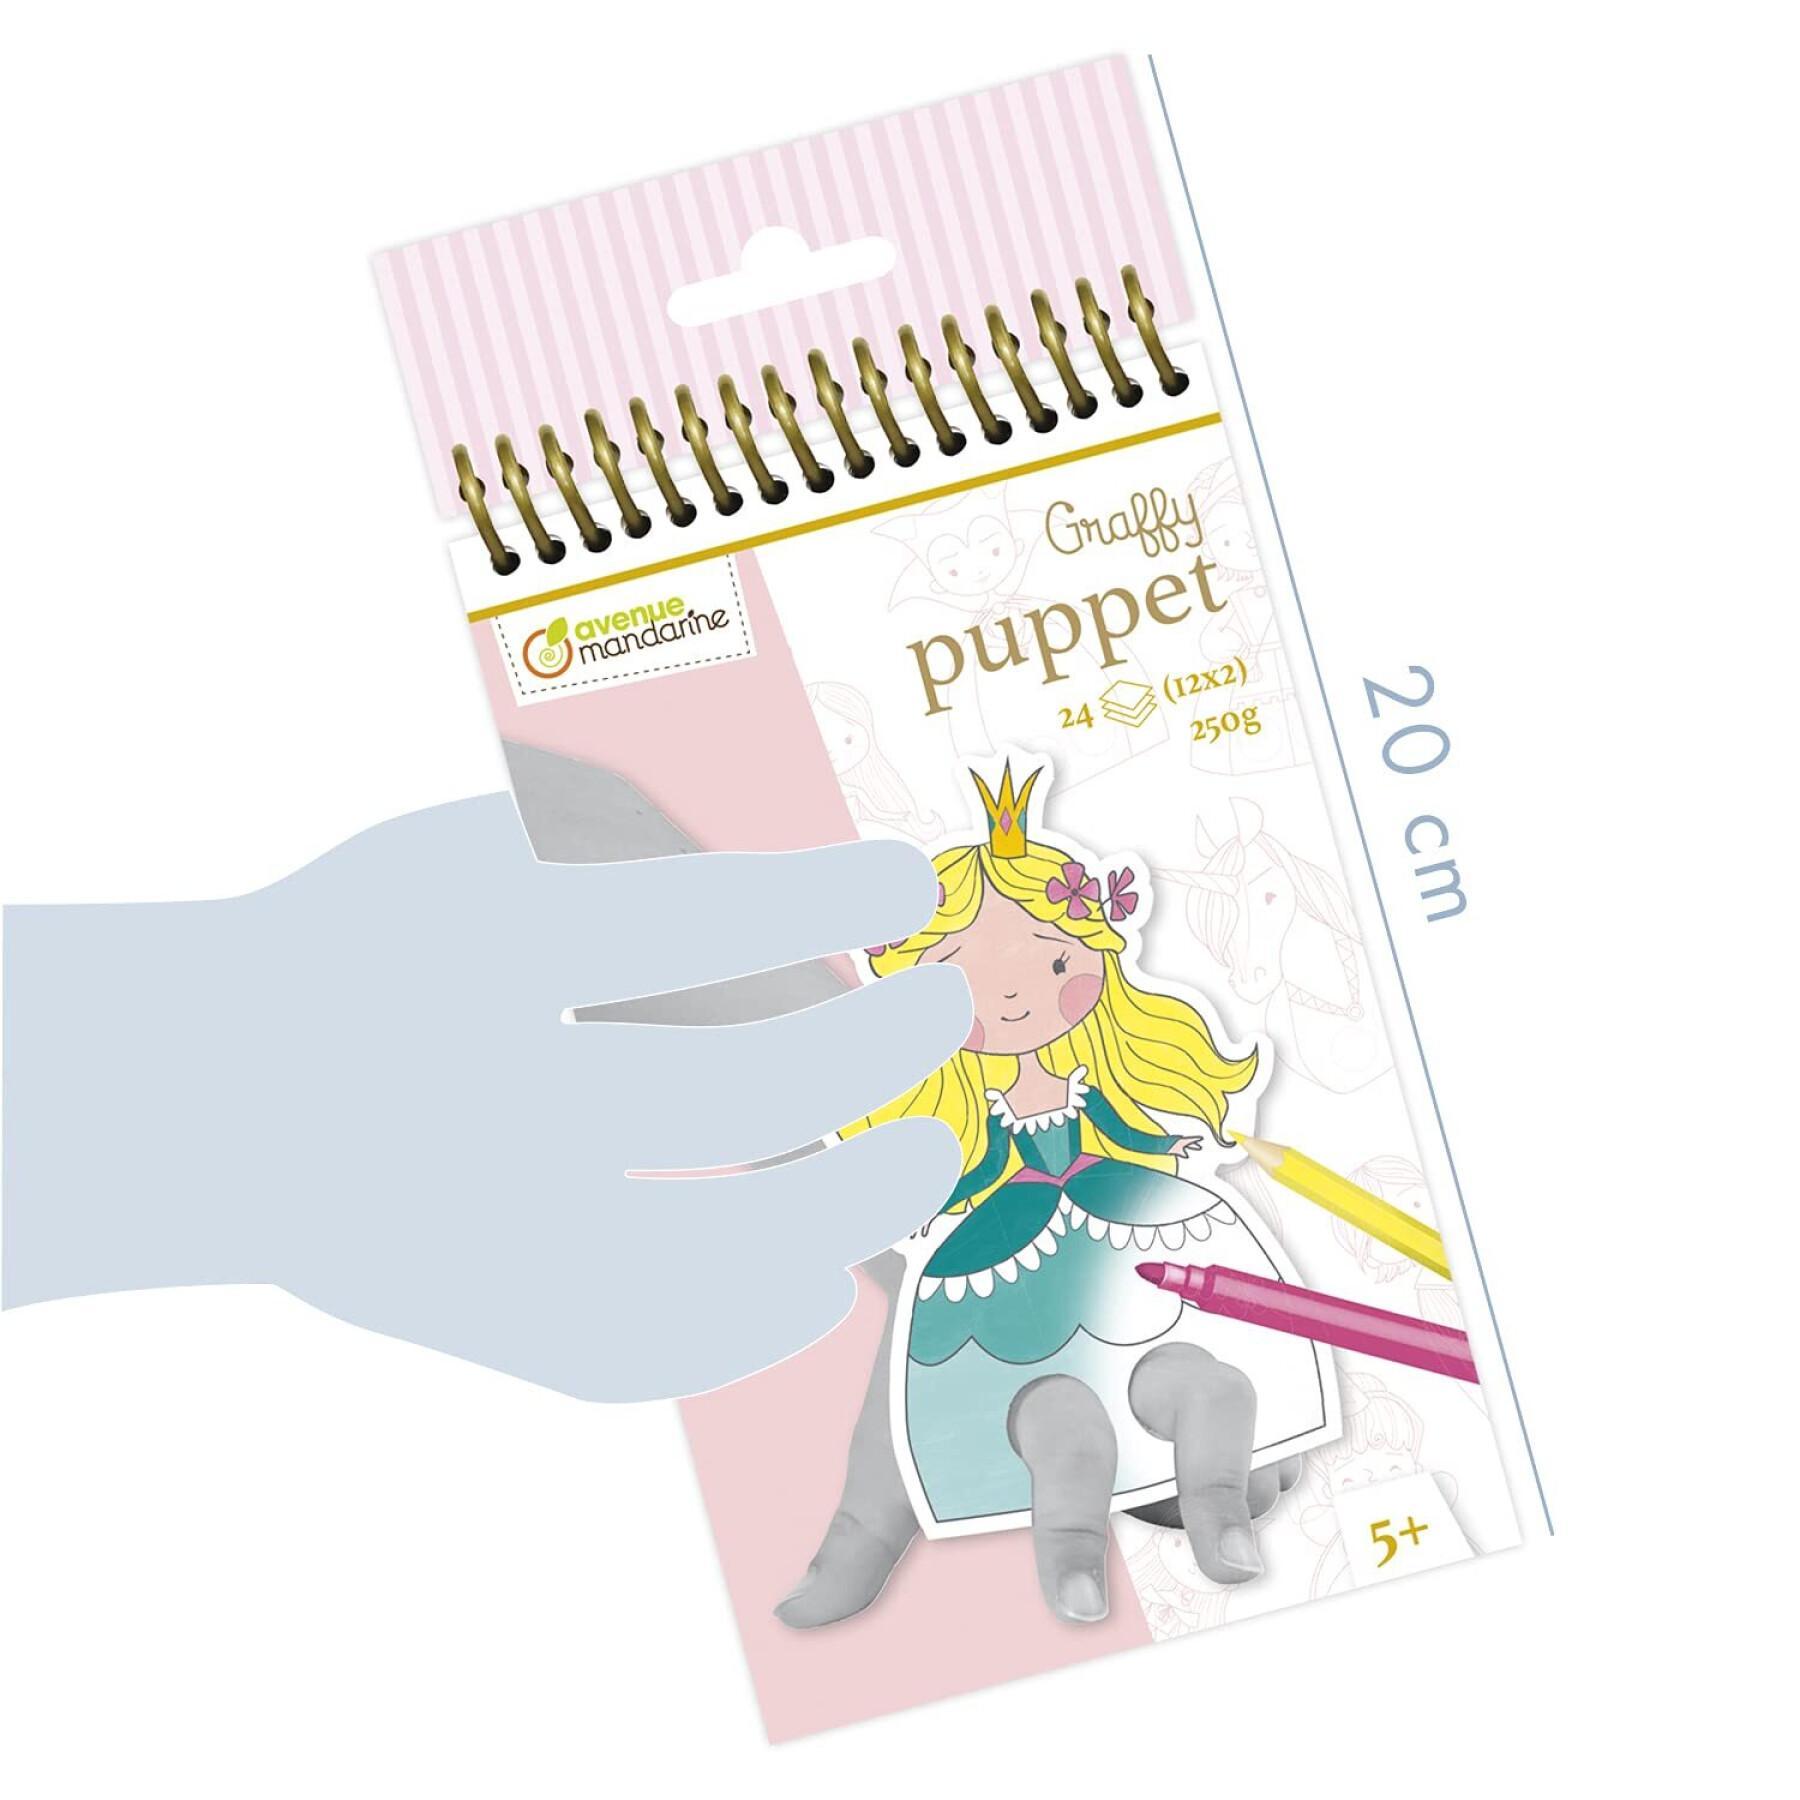 Petits carnet de 24 marionnettes à doigts prédécoupées à colorier Avenue Mandarine Graffy Puppet, Prince et Princesse